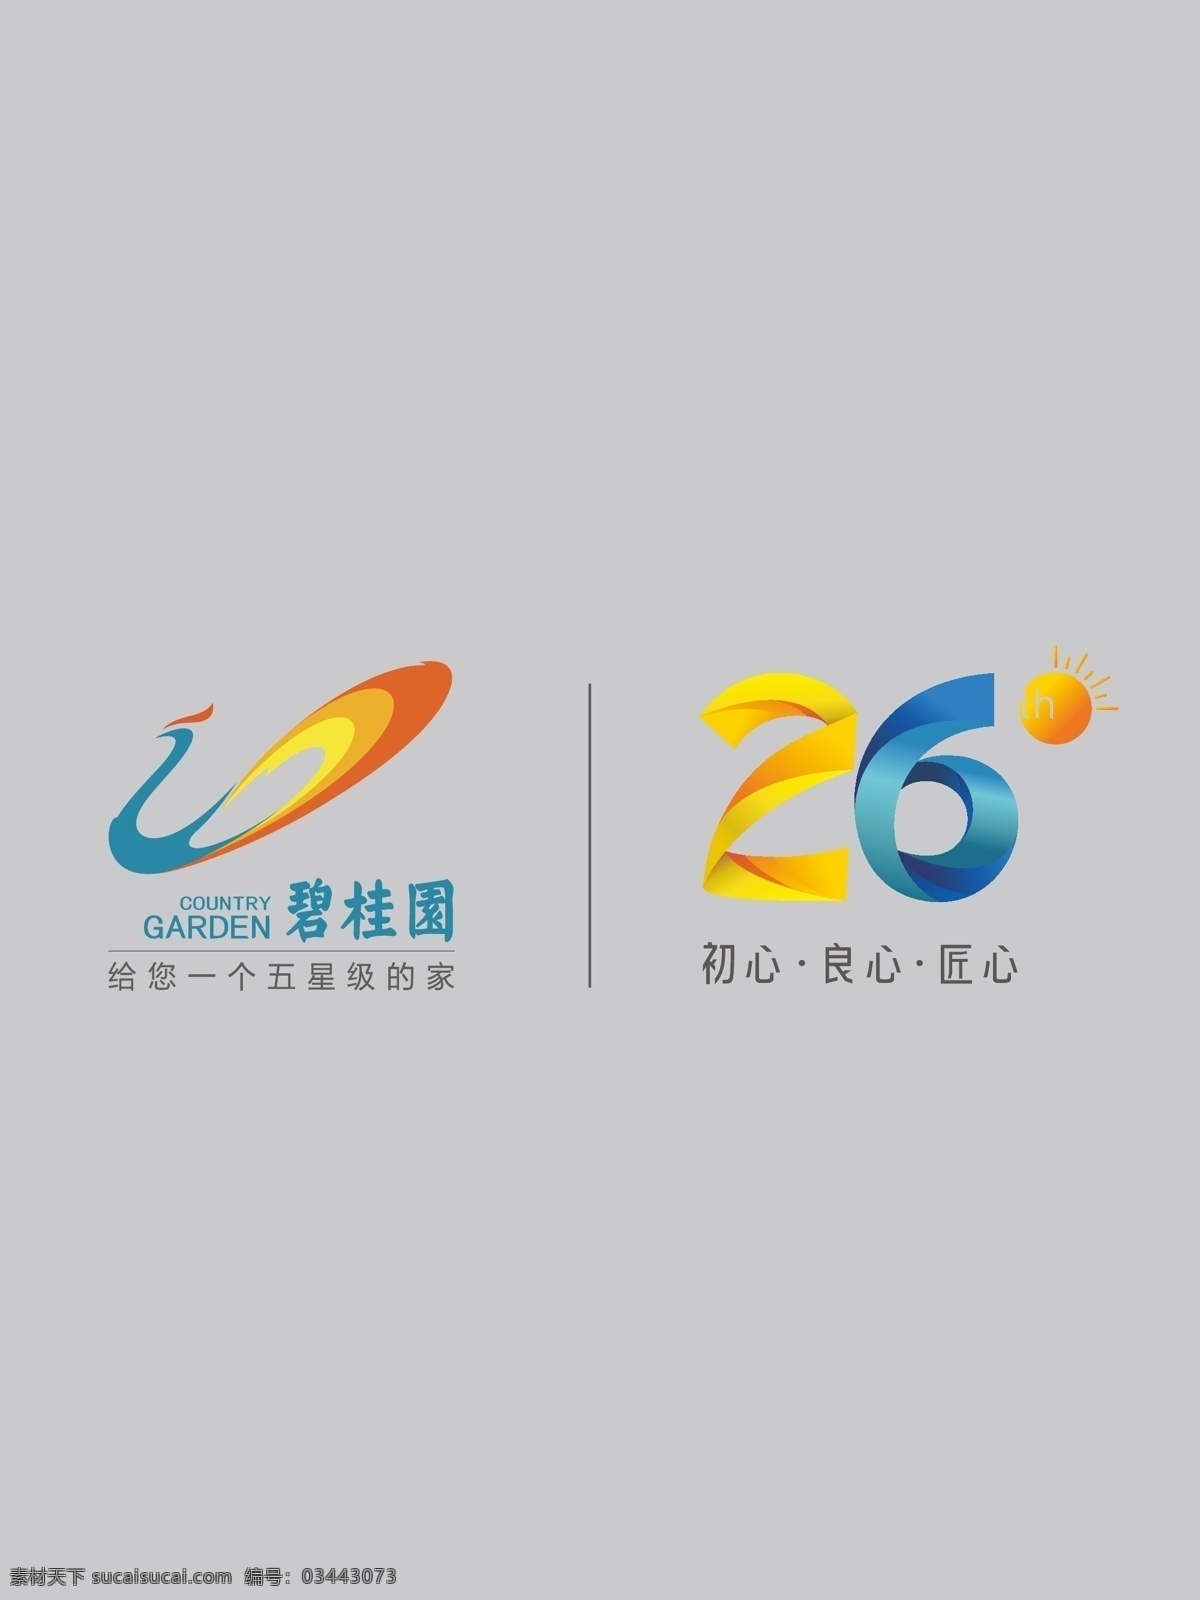 碧 桂 园 logo 碧桂园 矢量图 企业 logo设计